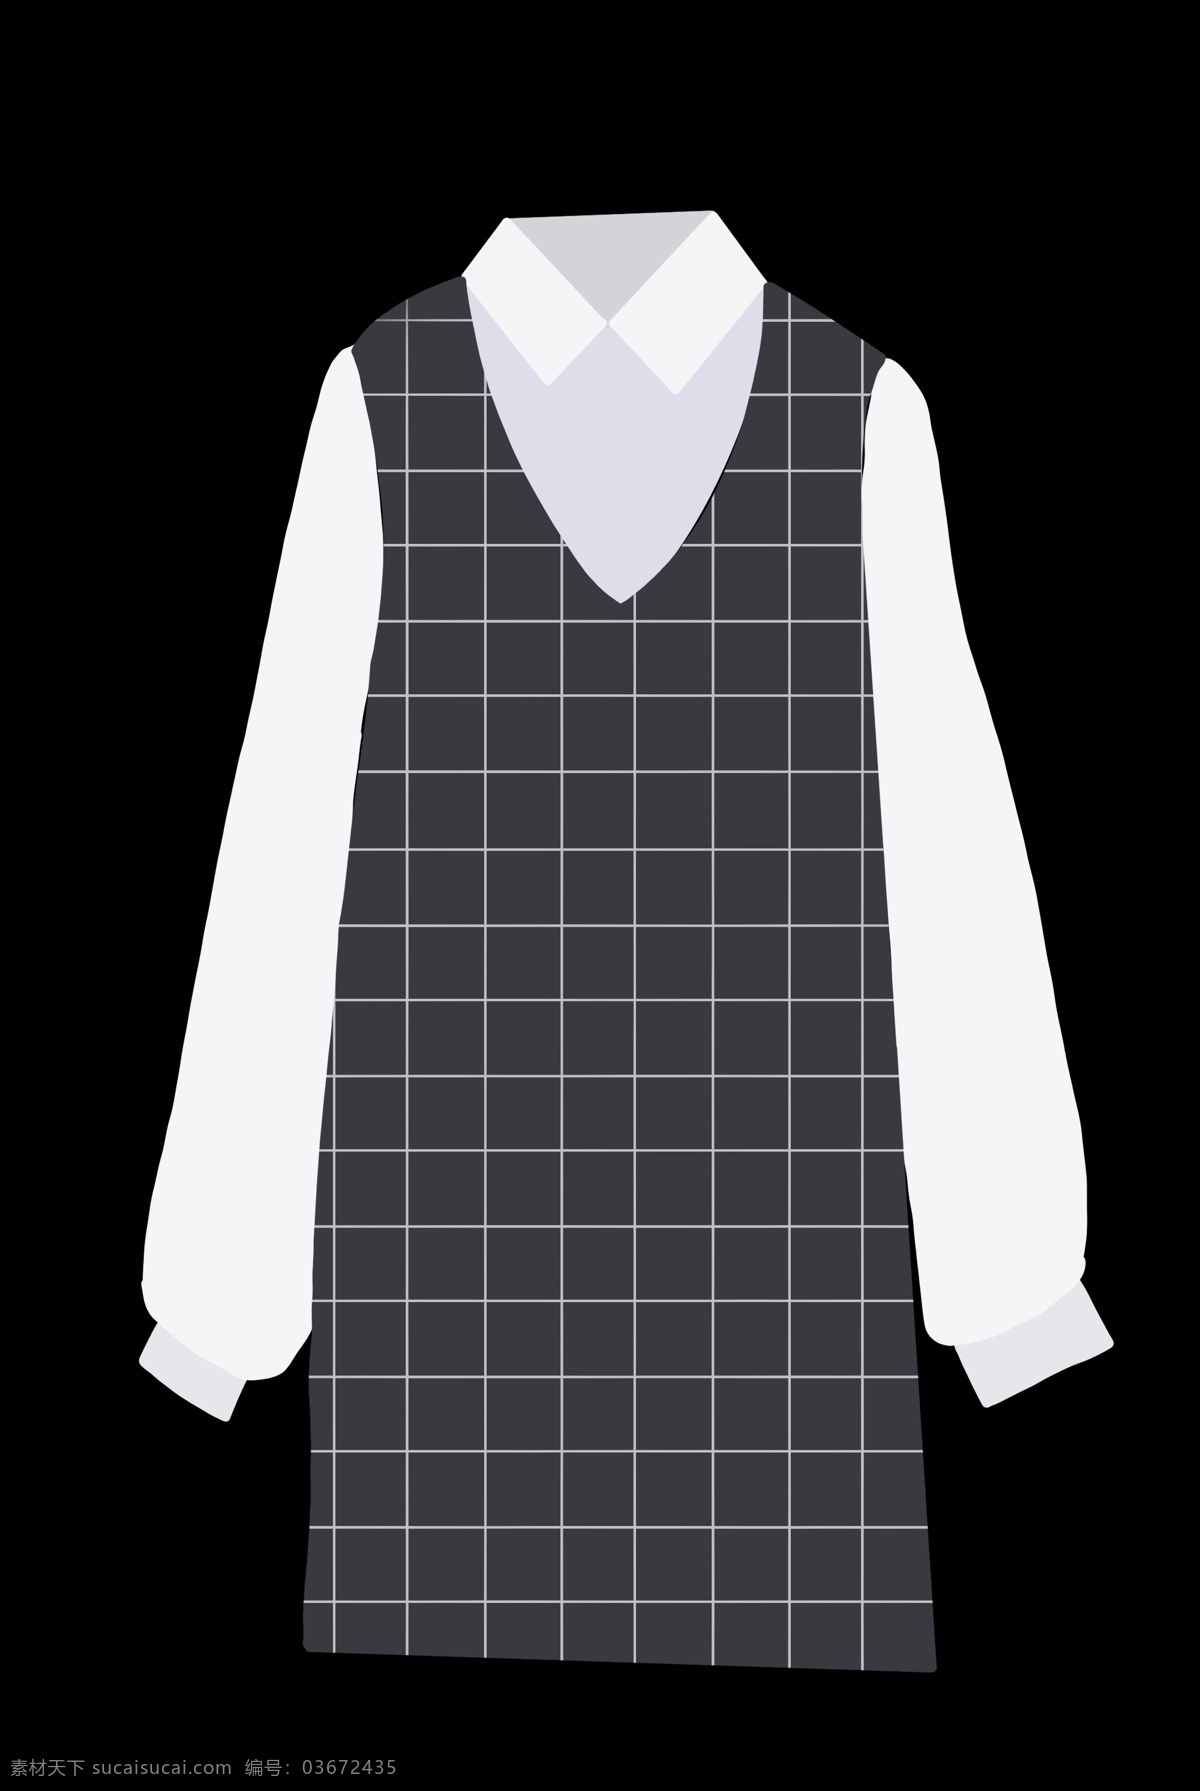 格子图案衣物 长袖 服装 衣领